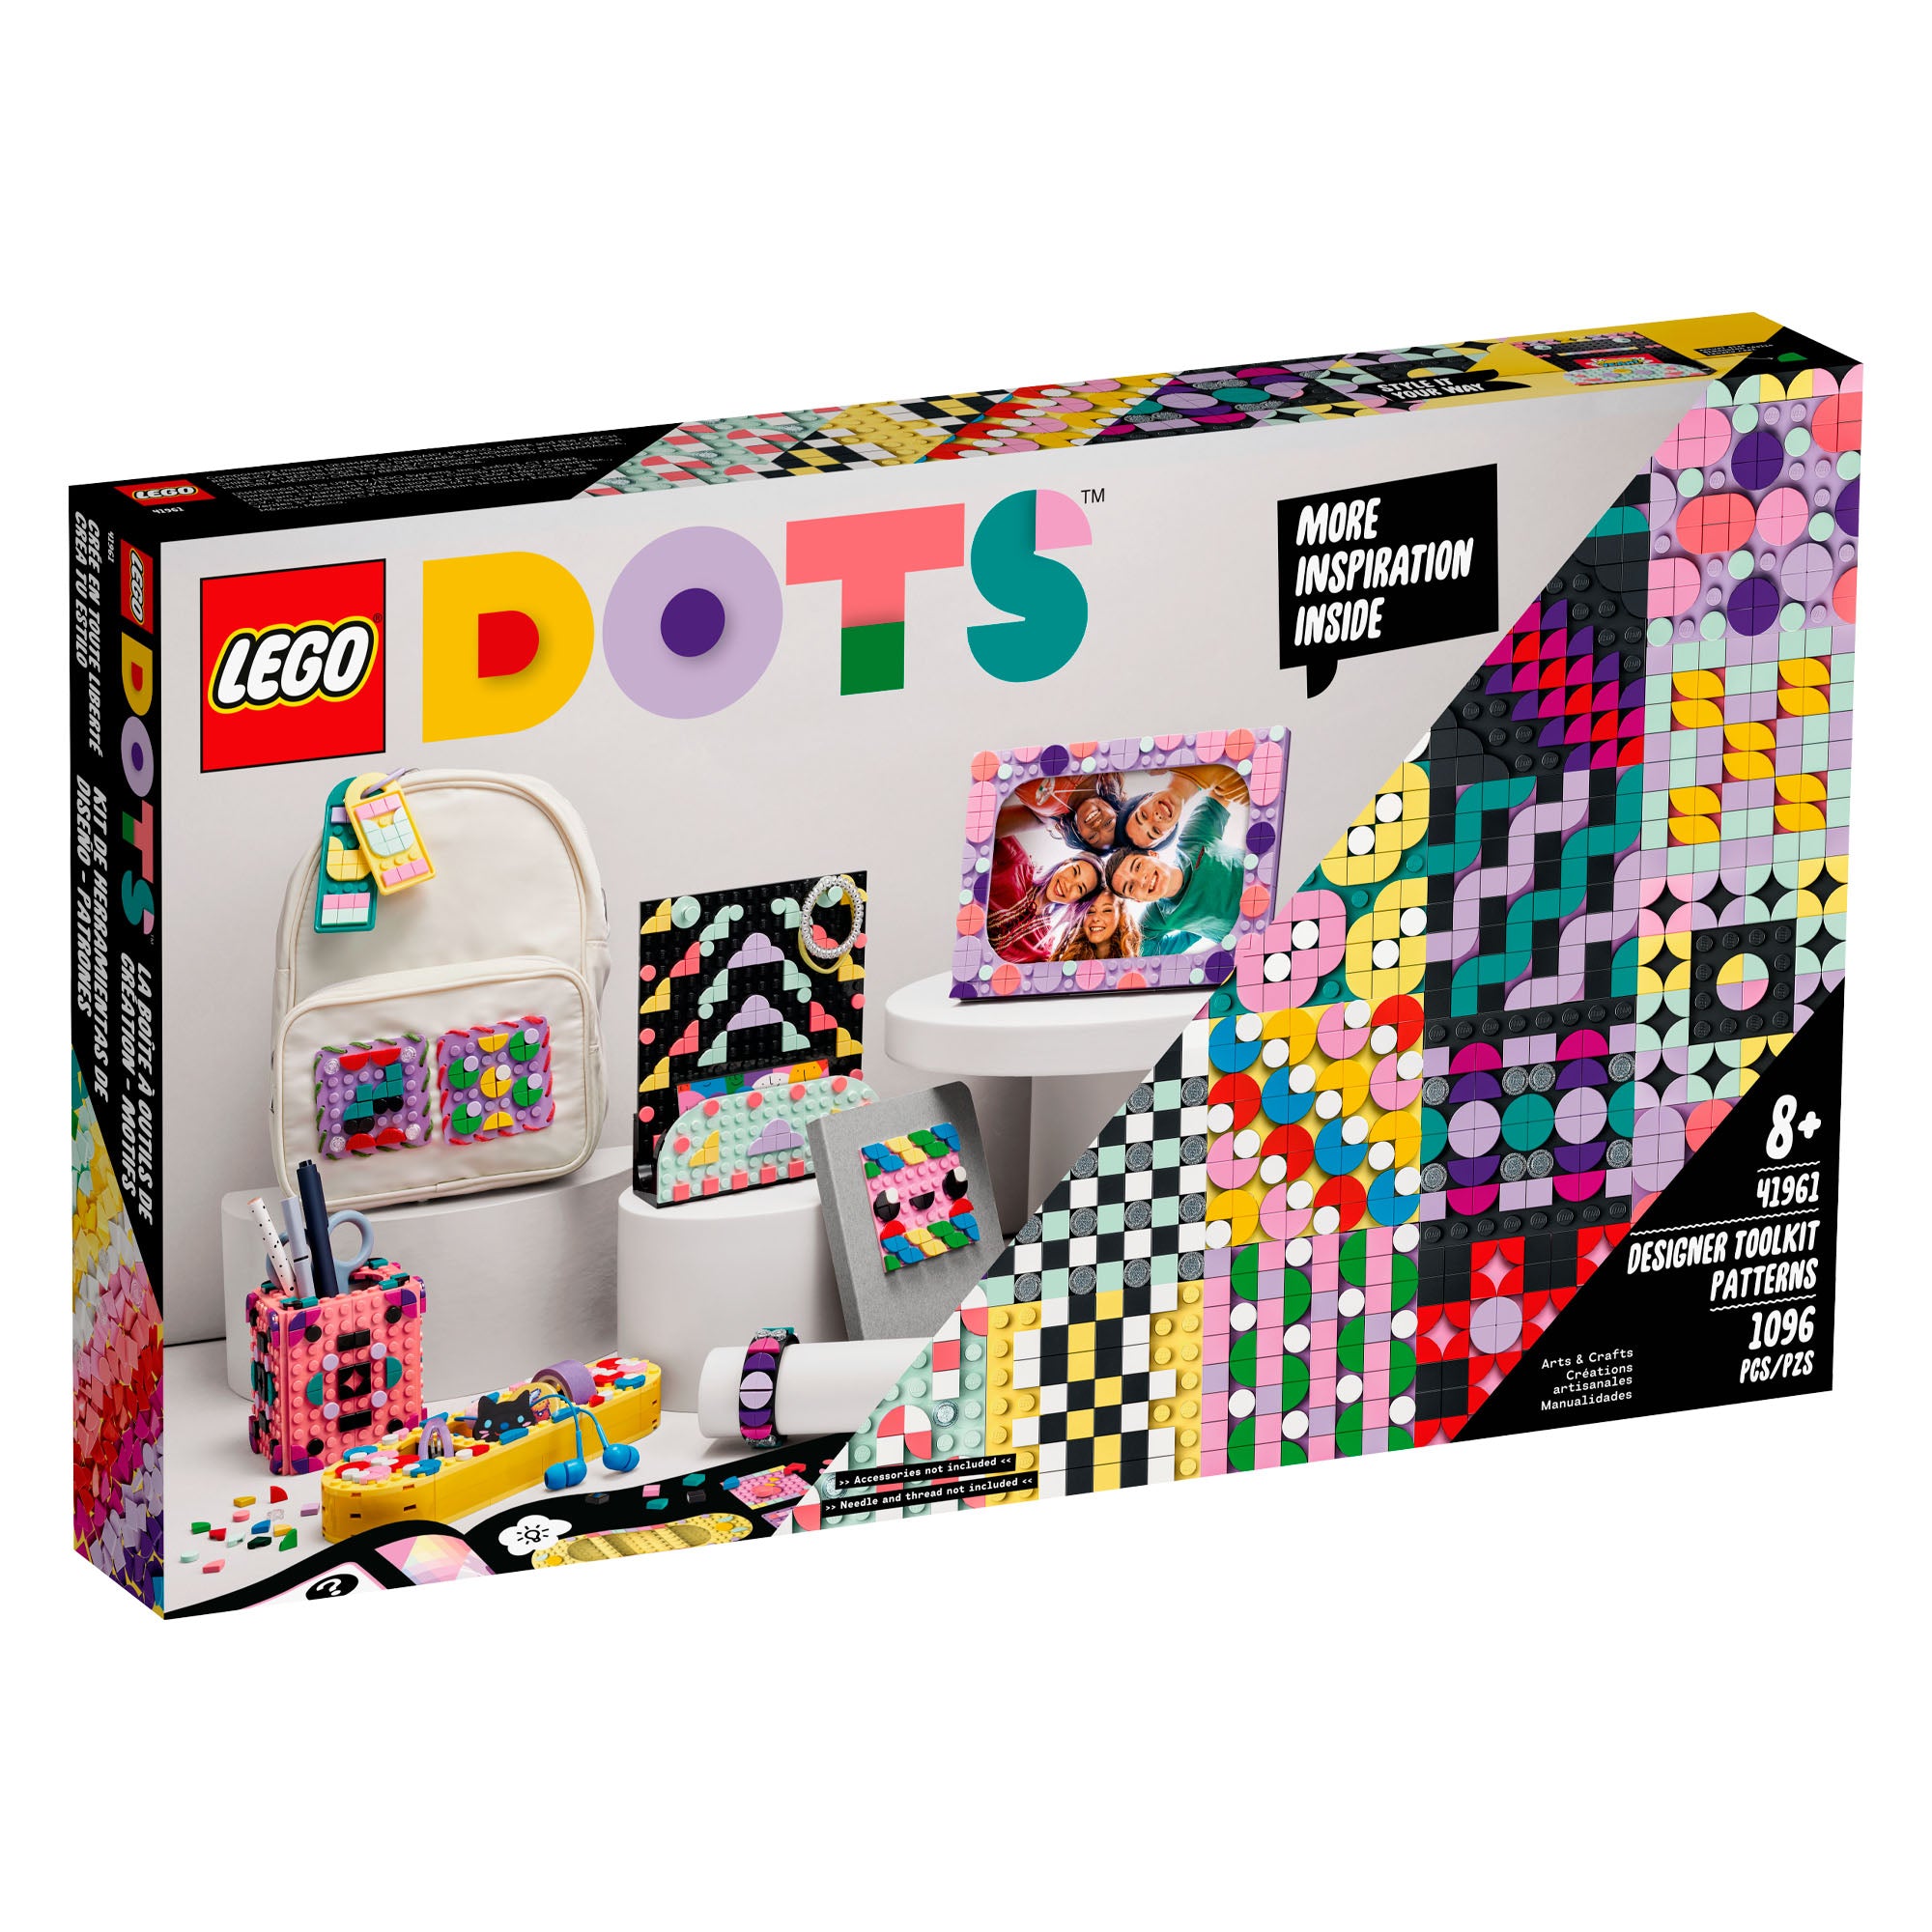 Créer le design du packaging de votre boîte lego